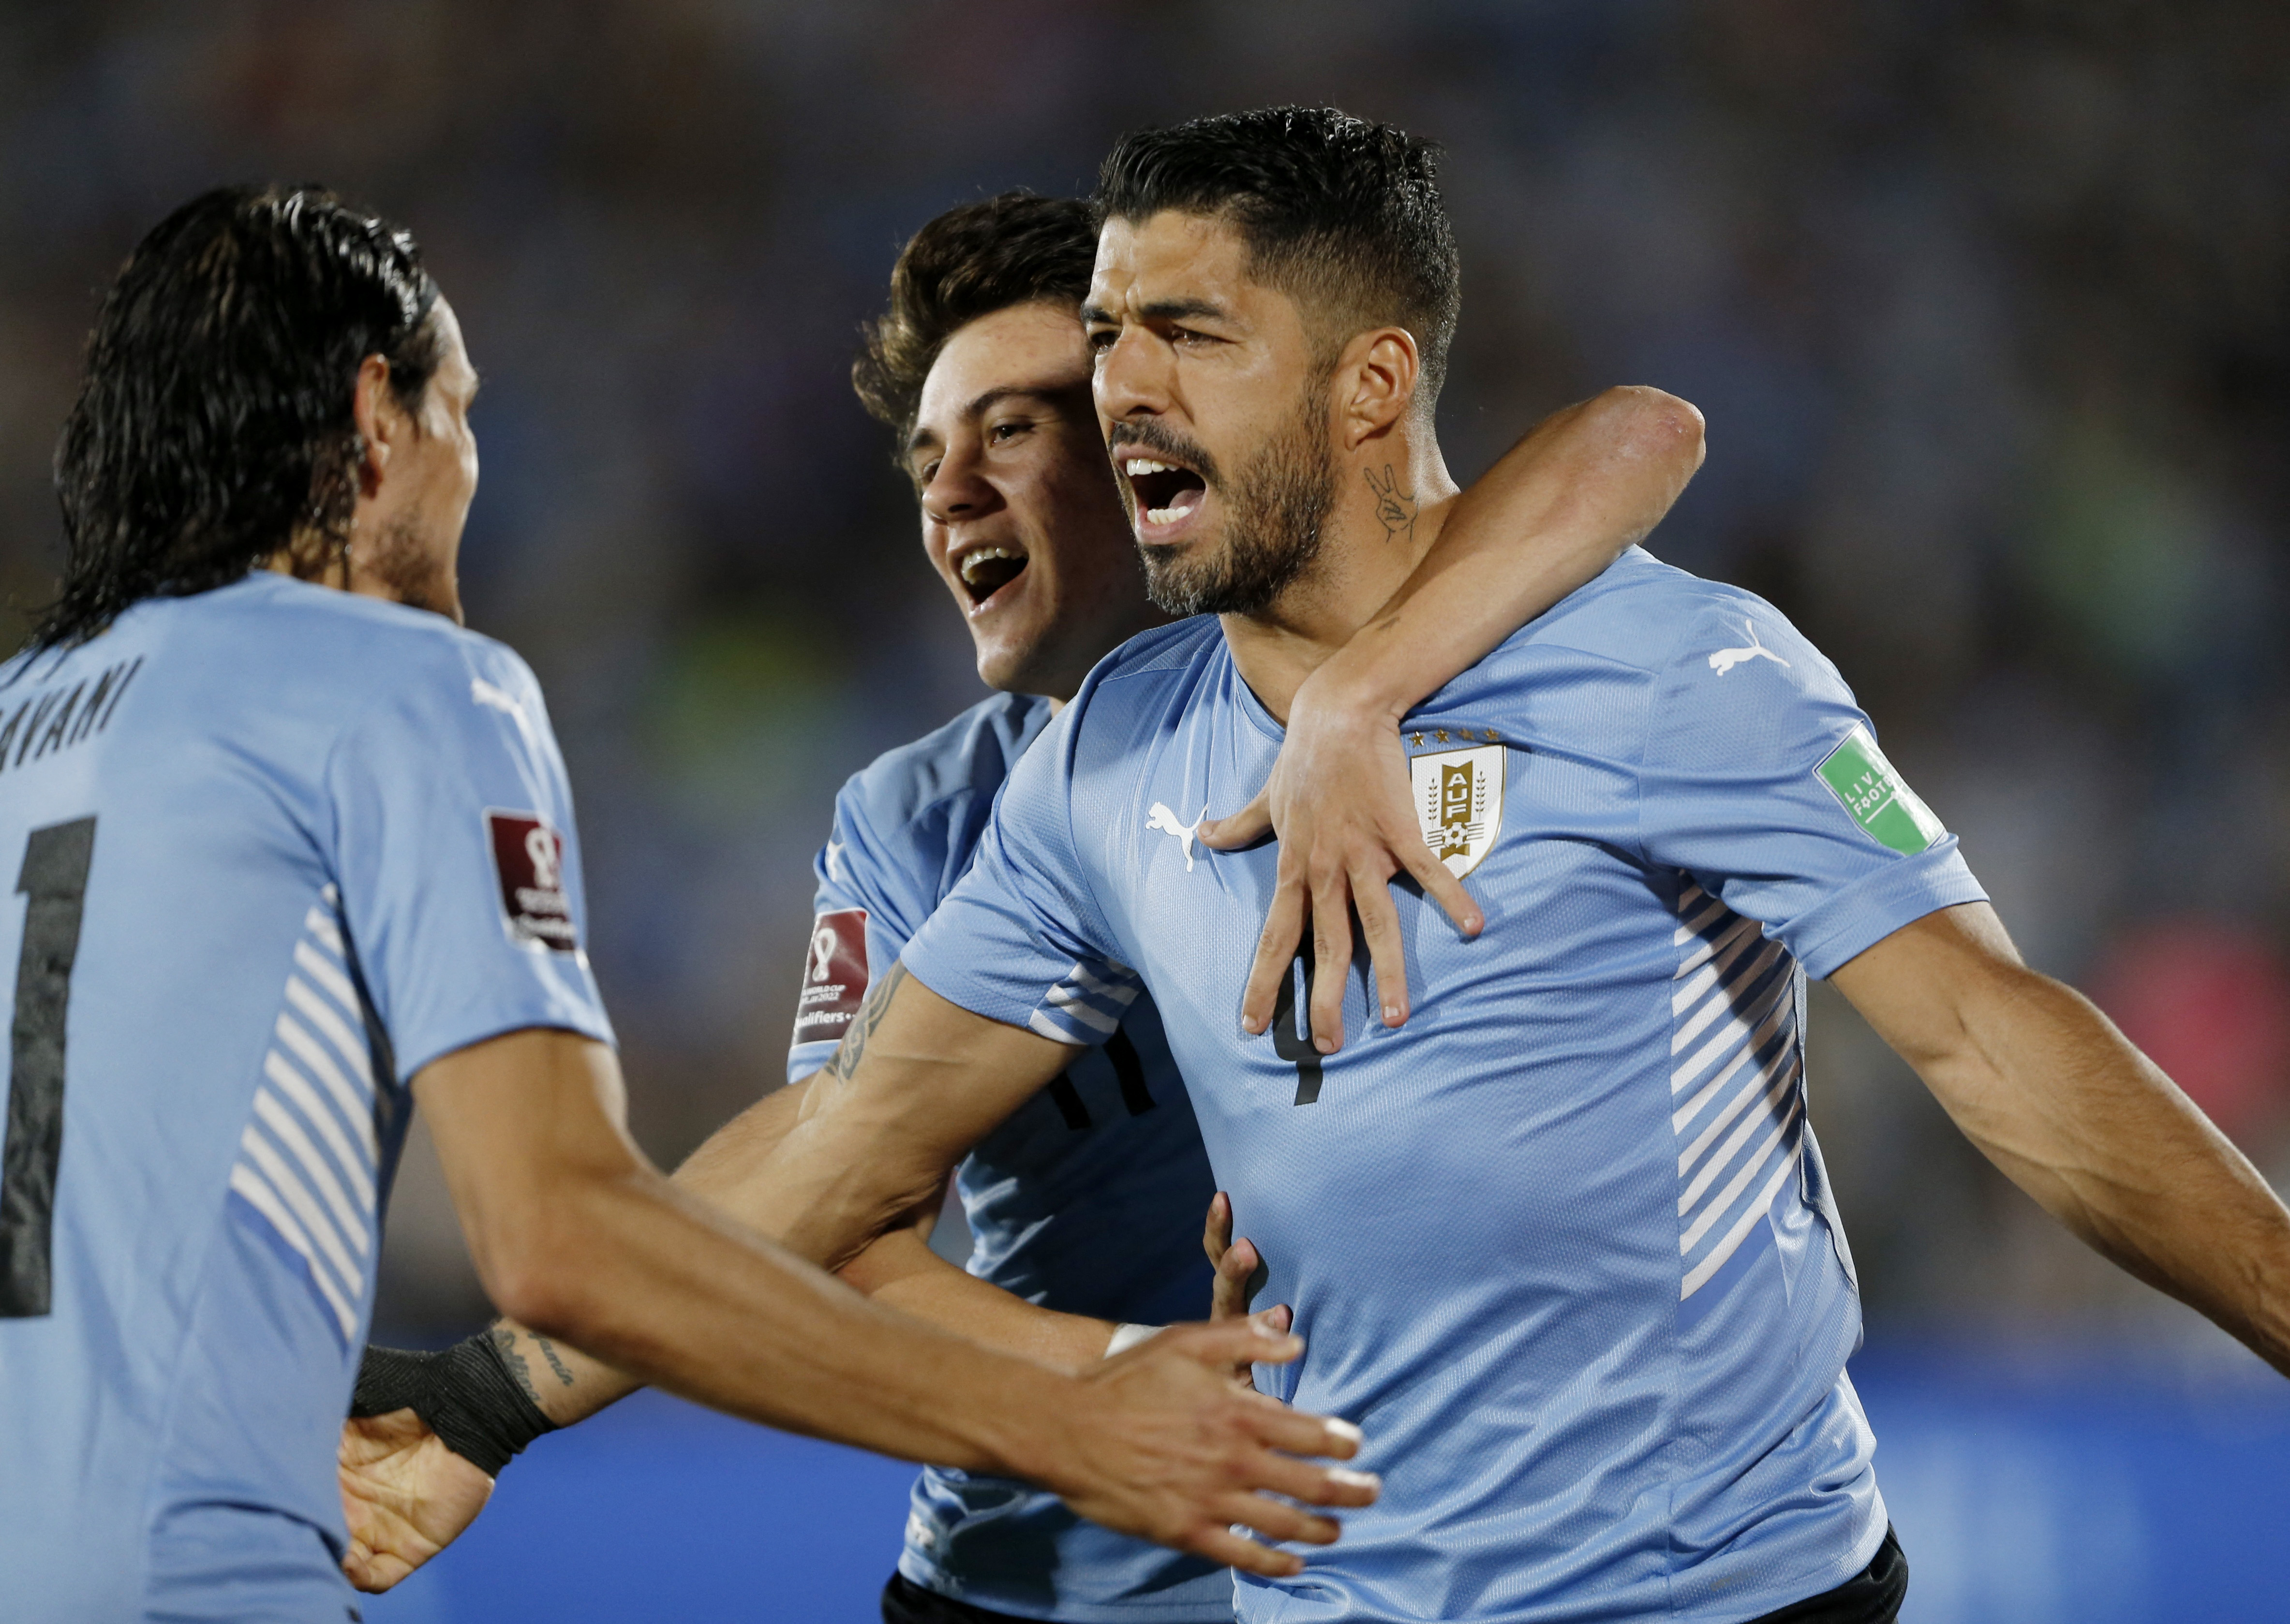 Selección Uruguay Eliminatorias Catar 2022 bajas de Lucas Torreira y Diego  Rossi, Selecciones Nacionales